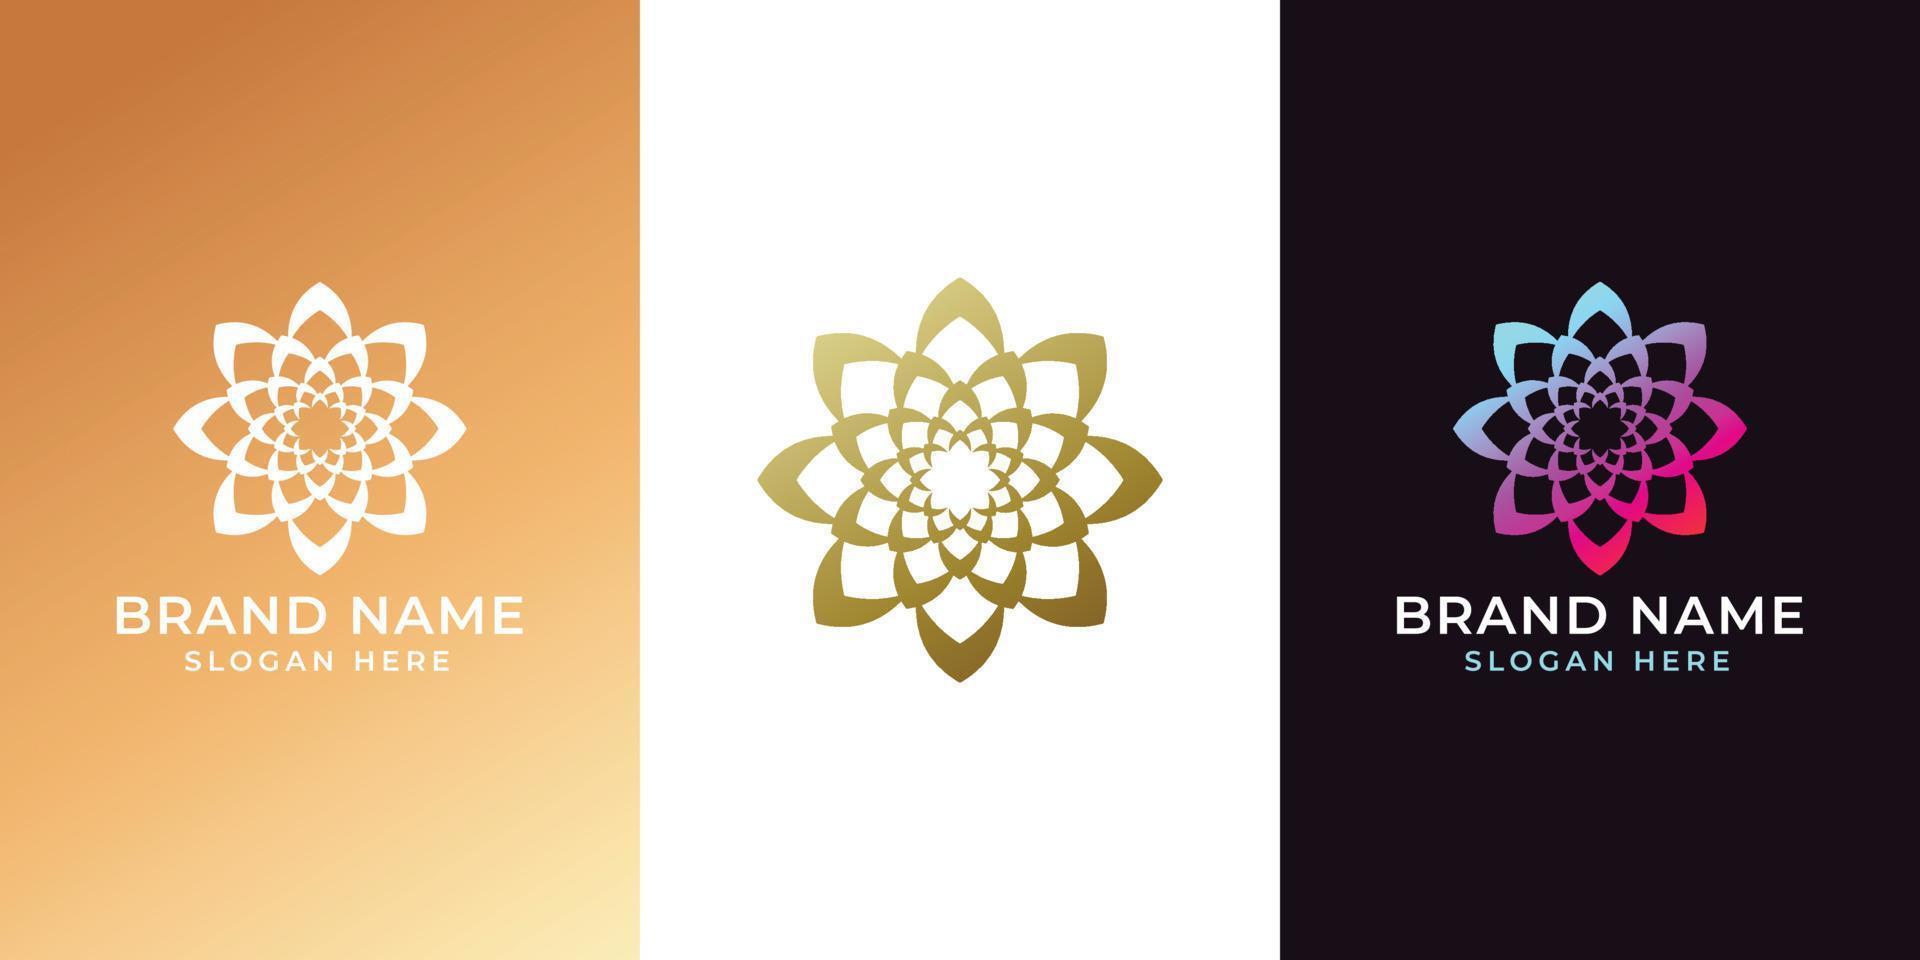 einzigartige kreisförmige logo-illustration. Mandala-Flachsymbol für Ihr Unternehmen. ayurveda, spa, yoga unternehmensidentität. Zen-Symboldesign für Werbung oder Web-Startup. marokkanischer Fliesenstil. Vektor isoliertes Zeichen.